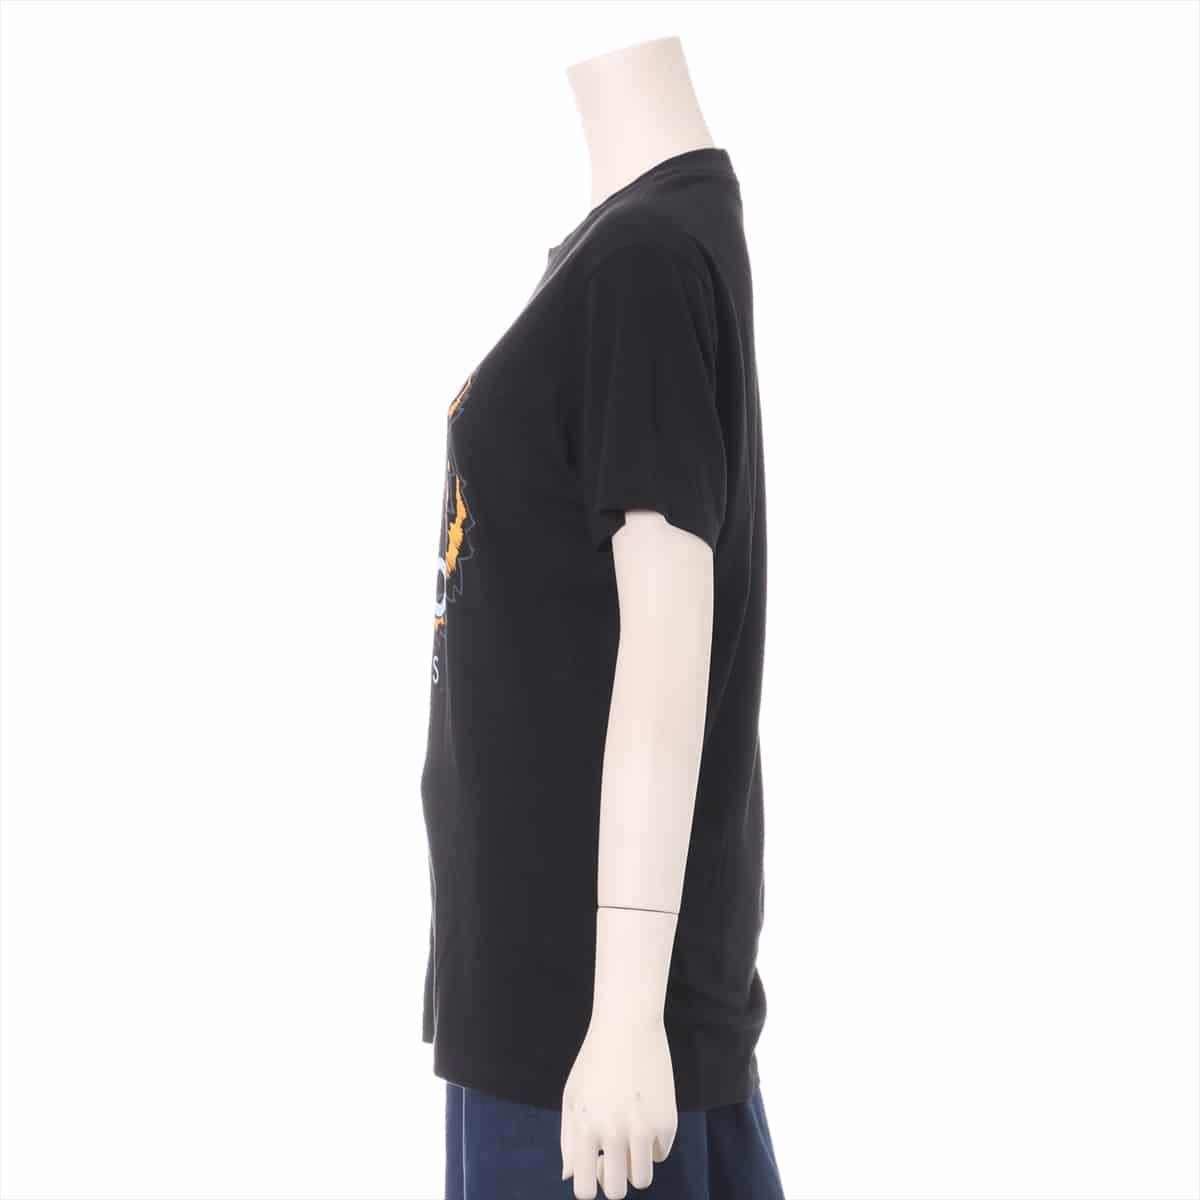 ケンゾー コットン Tシャツ XS メンズ ブラック